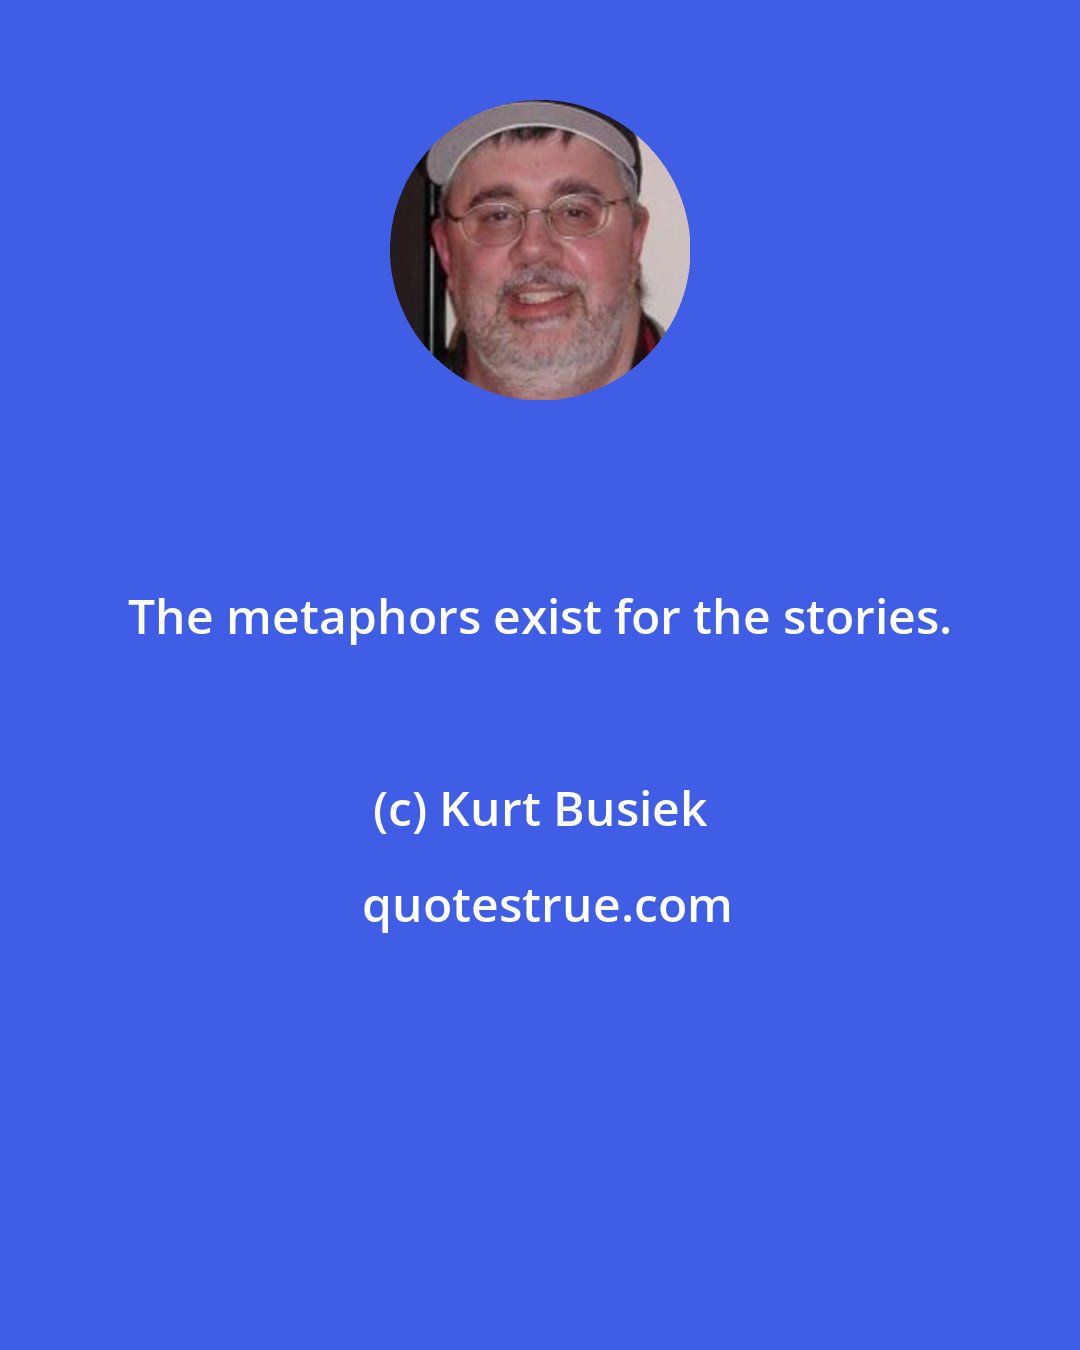 Kurt Busiek: The metaphors exist for the stories.